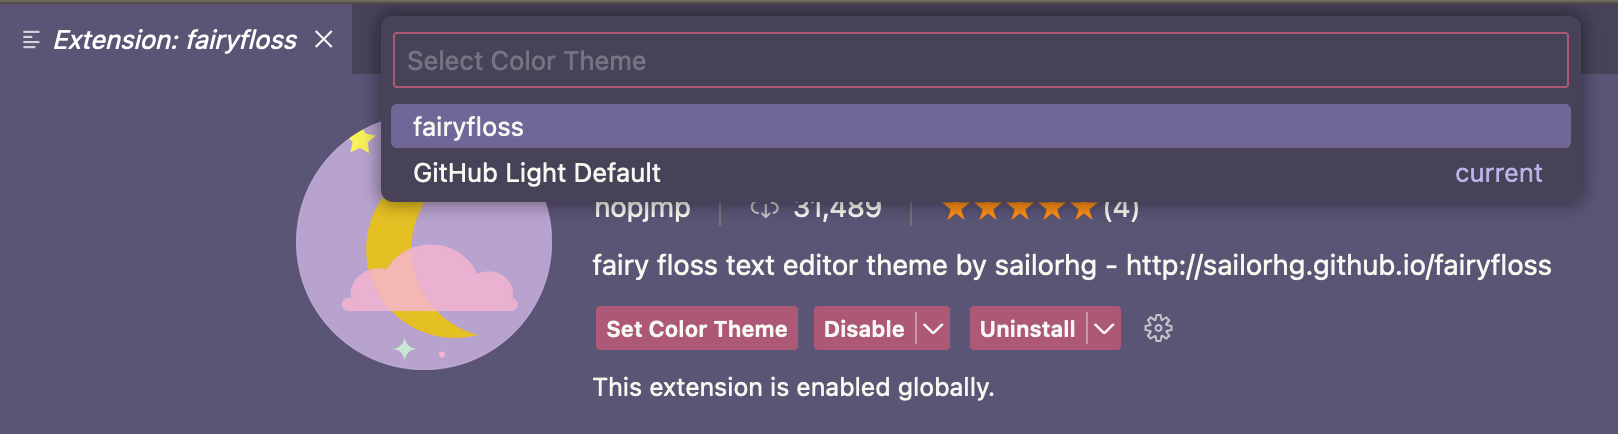 Capture d’écran de la liste déroulante « Sélectionner le thème de couleur », avec le thème « fairyfloss » sélectionné.